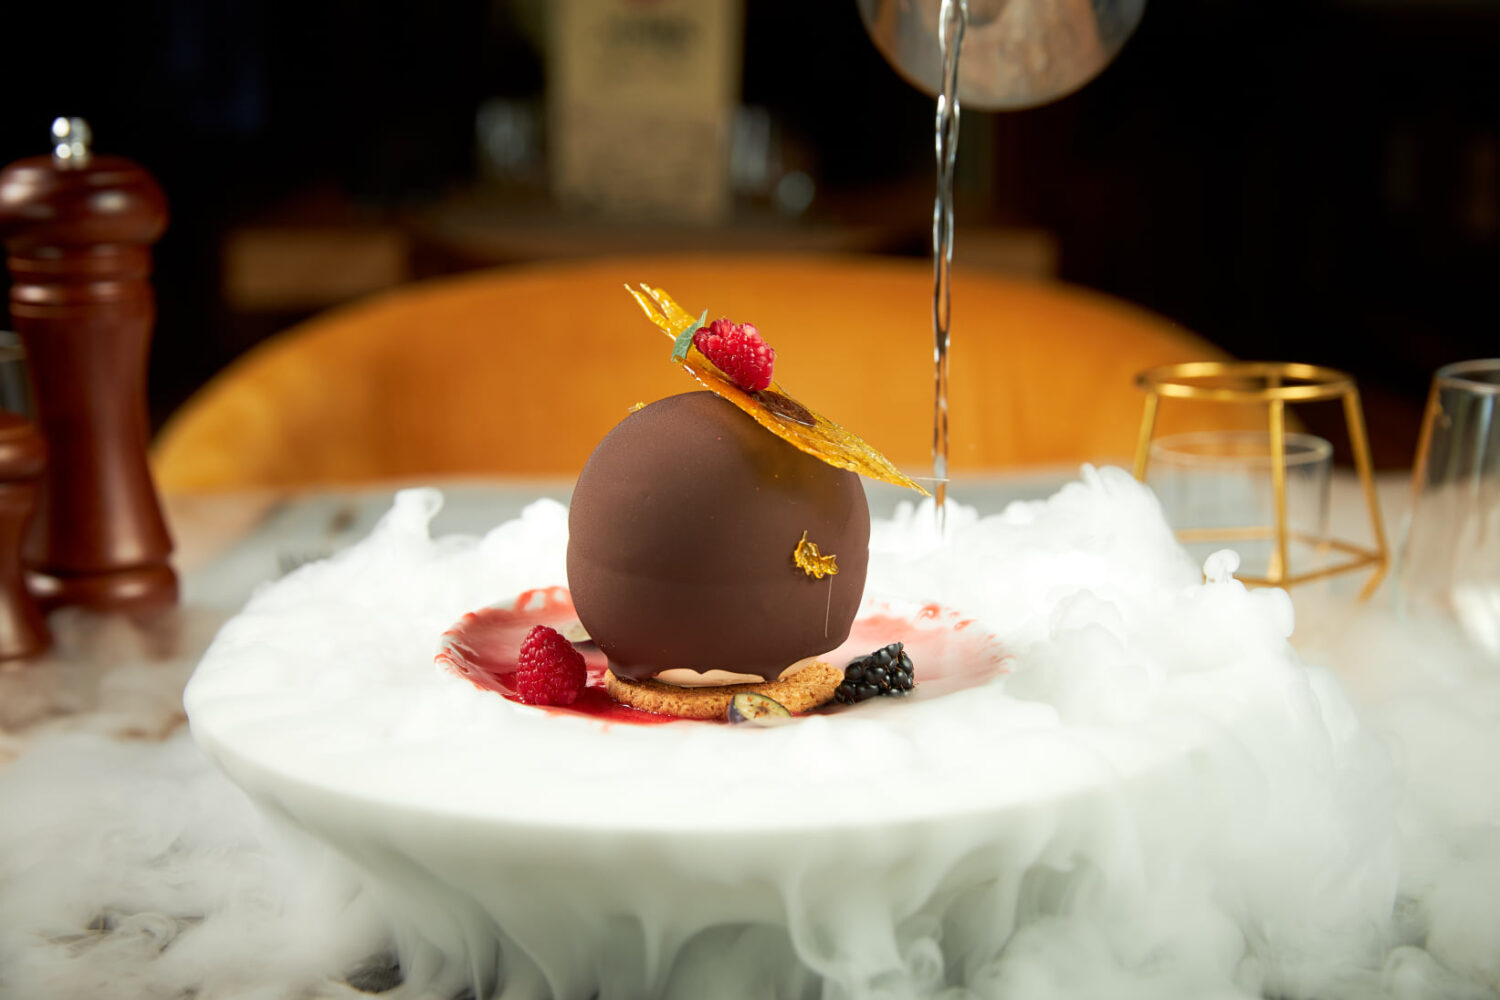 Glob de ciocolată umplut cu cremă de mascarpone și vișine, servit pe gheață carbonică la restaurant The Mark